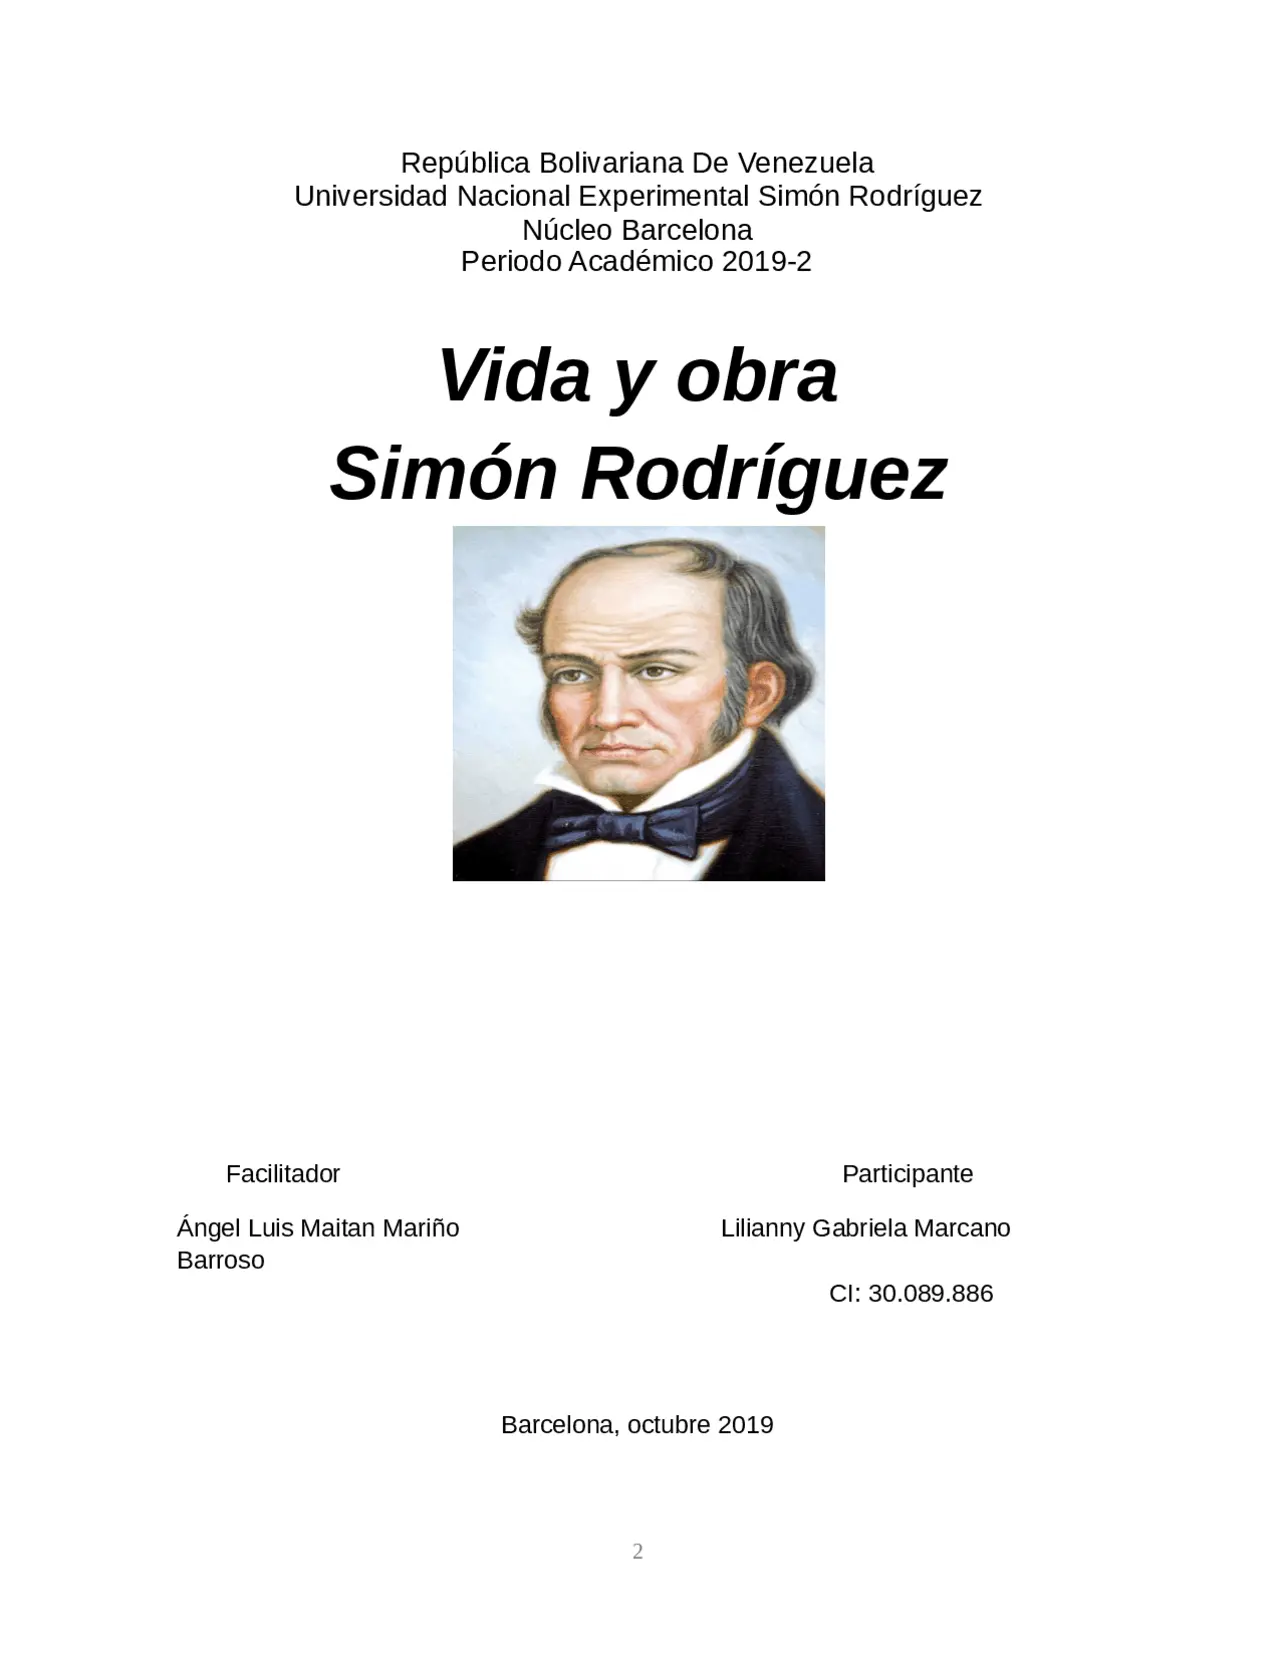 vida y obra de simon rodriguez resumen - Cuál fue la obra de Simón Rodríguez